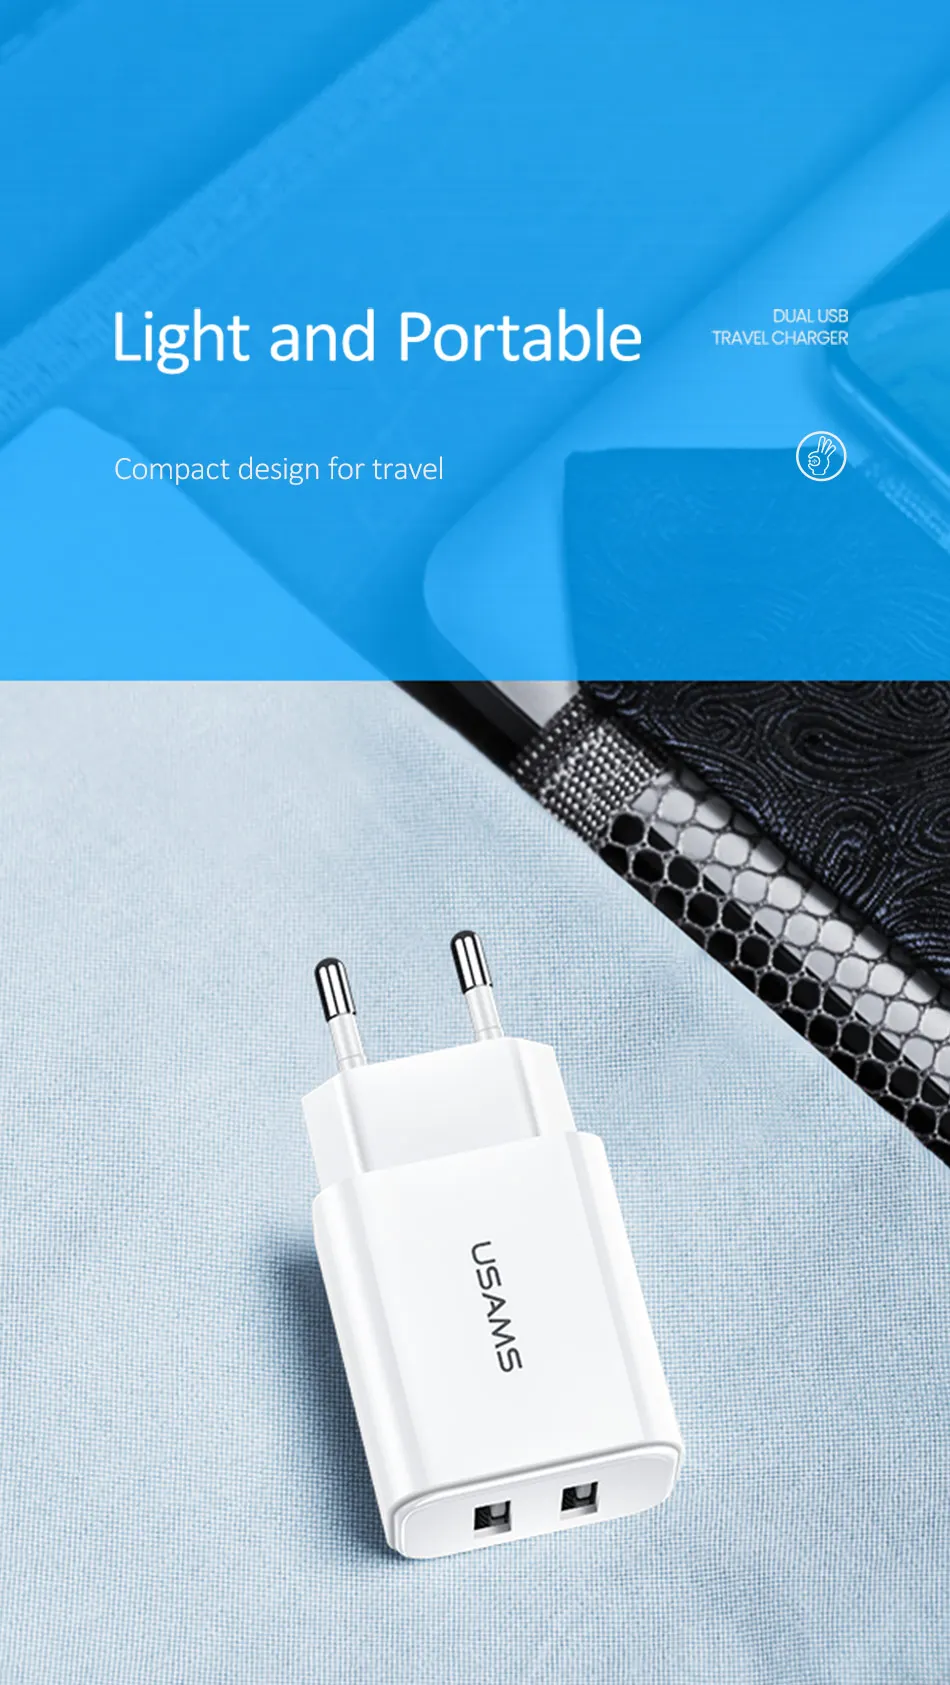 USAMS USB зарядное устройство 2.1A Универсальный телефон Быстрая зарядка дорожный адаптер для iPhone X 8 6 двойное настенное зарядное устройство для samsung Xiaomi